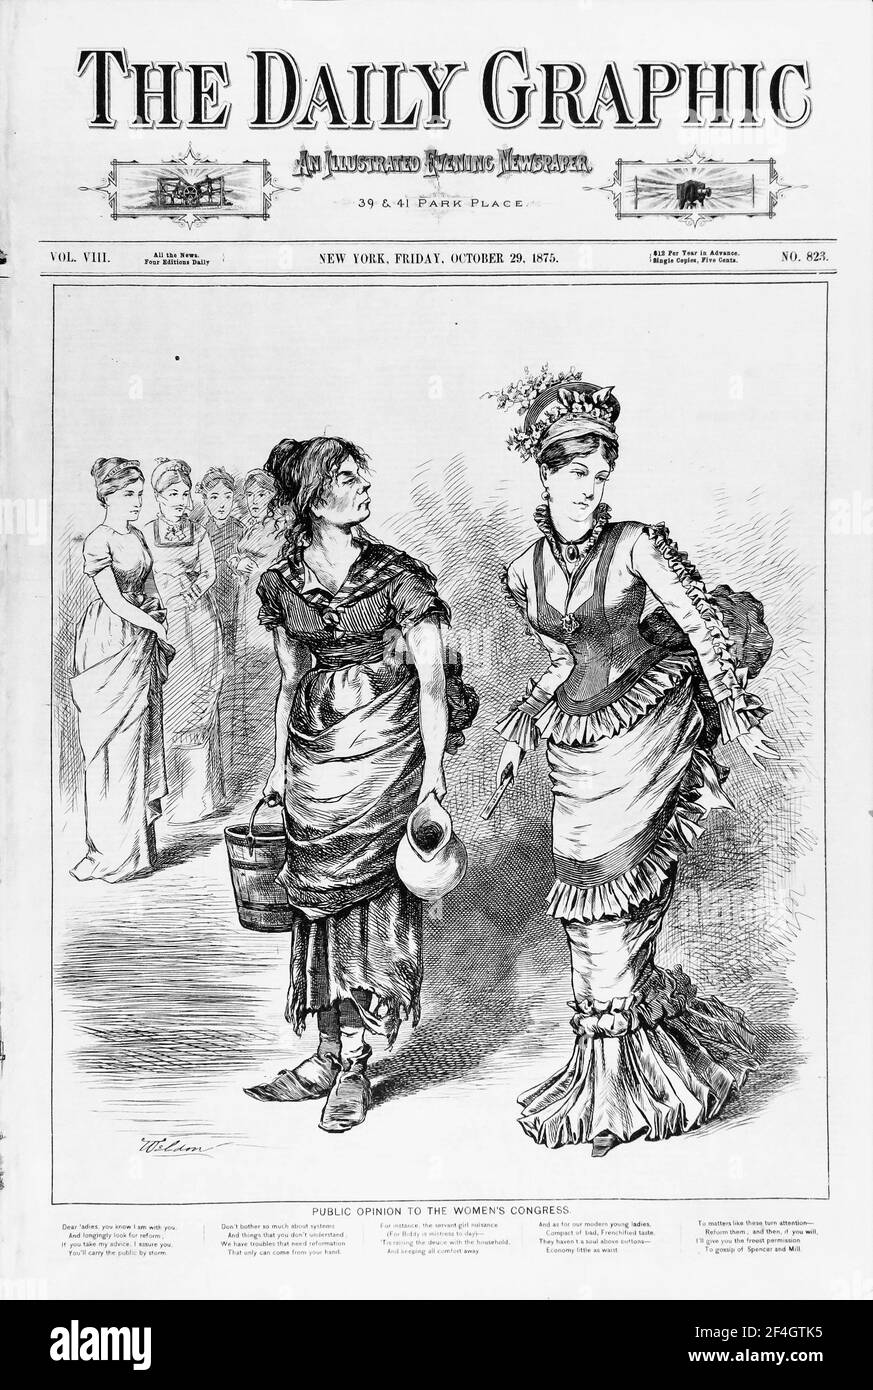 Cover Illustration aus dem Daily Graphic, die die privilegierte Figur eines Frauenkongressmitglieds mit einer "arbeitenden Frau" kontrastiert, die sie zu vertreten behaupteten, veröffentlicht in New York für den amerikanischen Markt, 1875. Fotografie von Emilia van Beugen. () Stockfoto